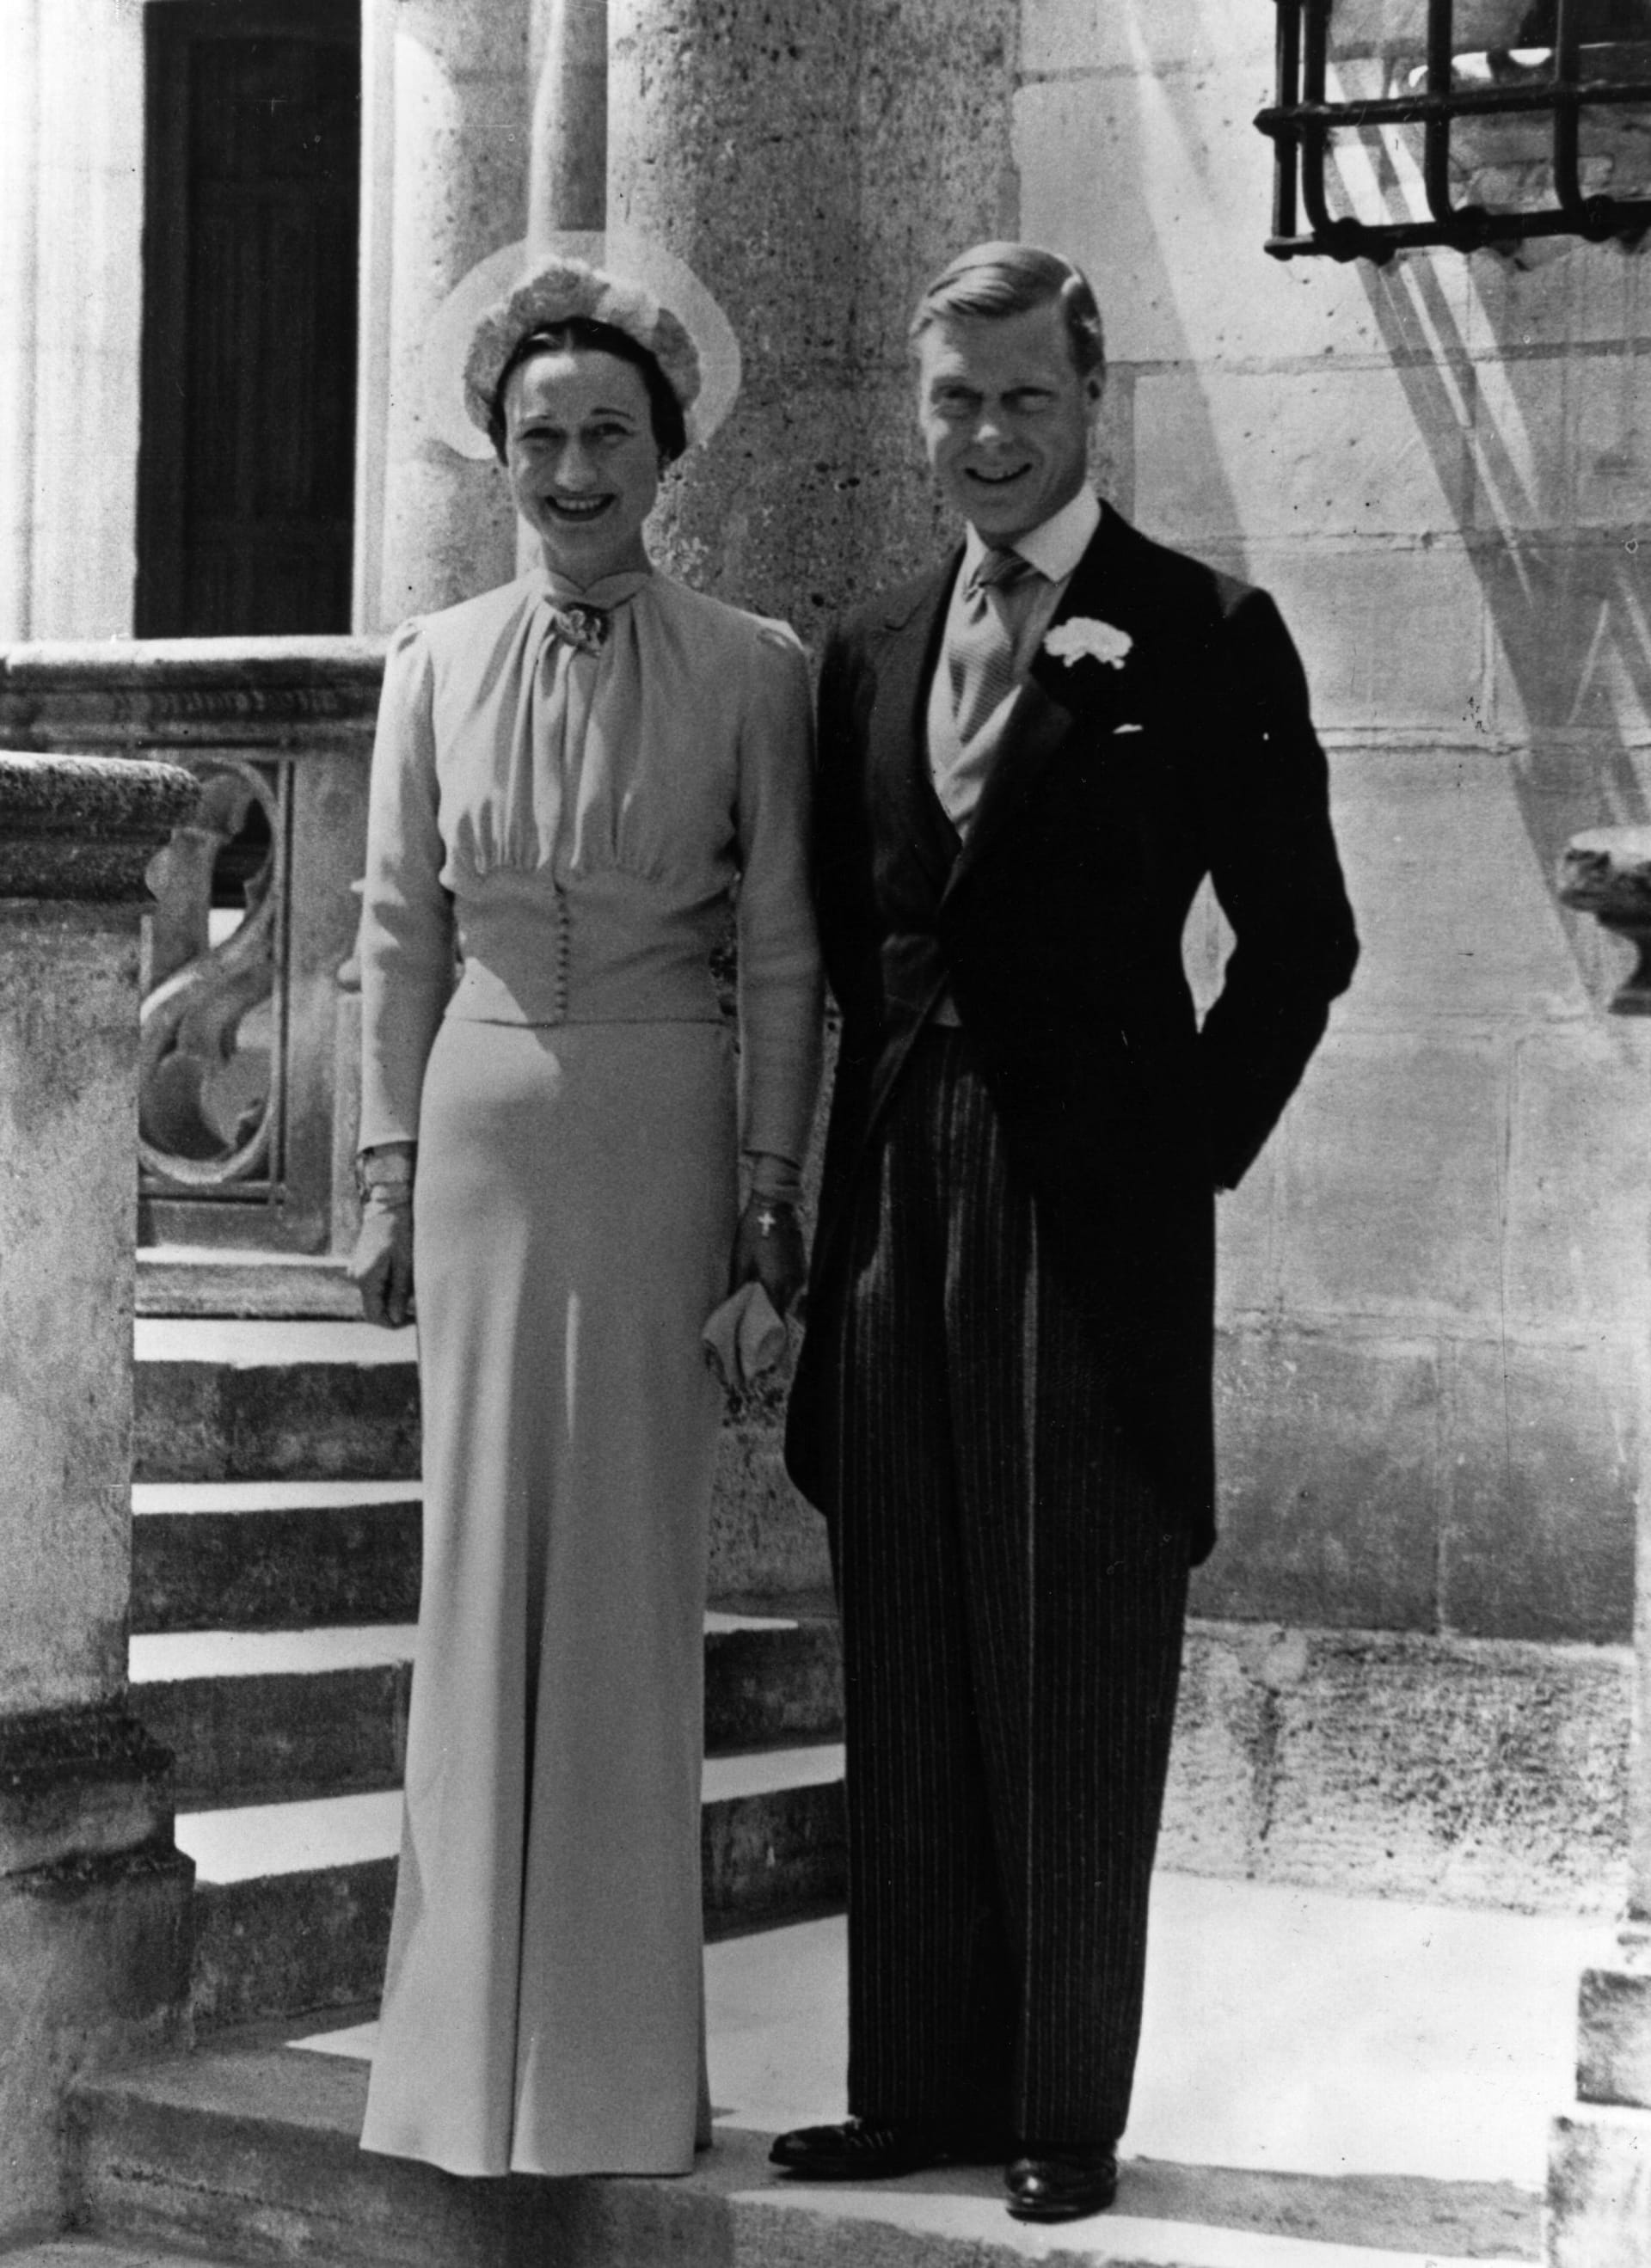 Eduard VIII. und Wallis Simpson an ihrem Hochzeitstag im Jahr 1937